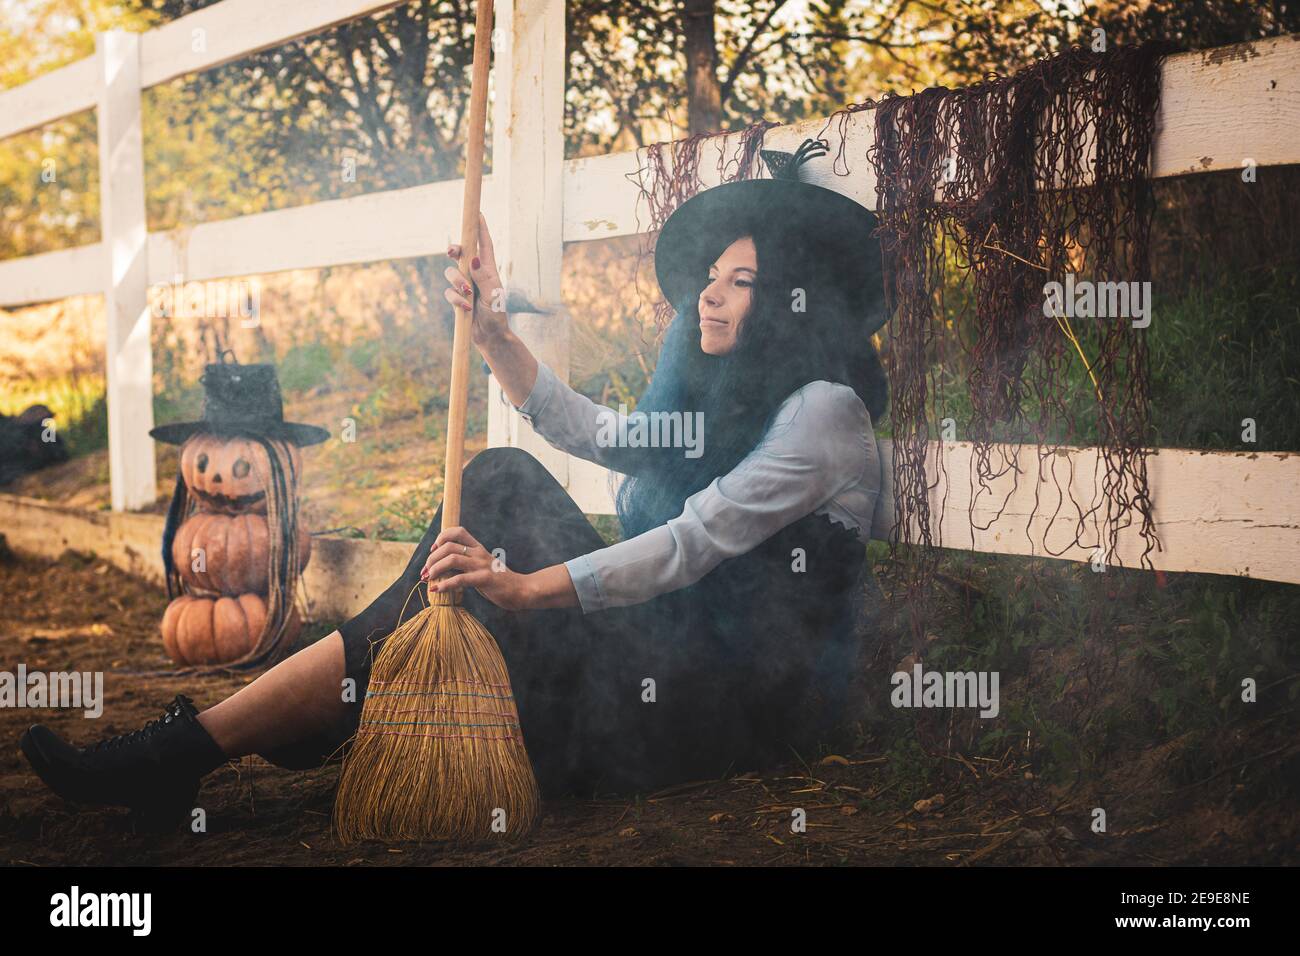 Die Hexe Sitzt Am Zaun Auf Dem Hof Und Bläst Den Rauch Mit Einem Besen Stockfotografie Alamy 